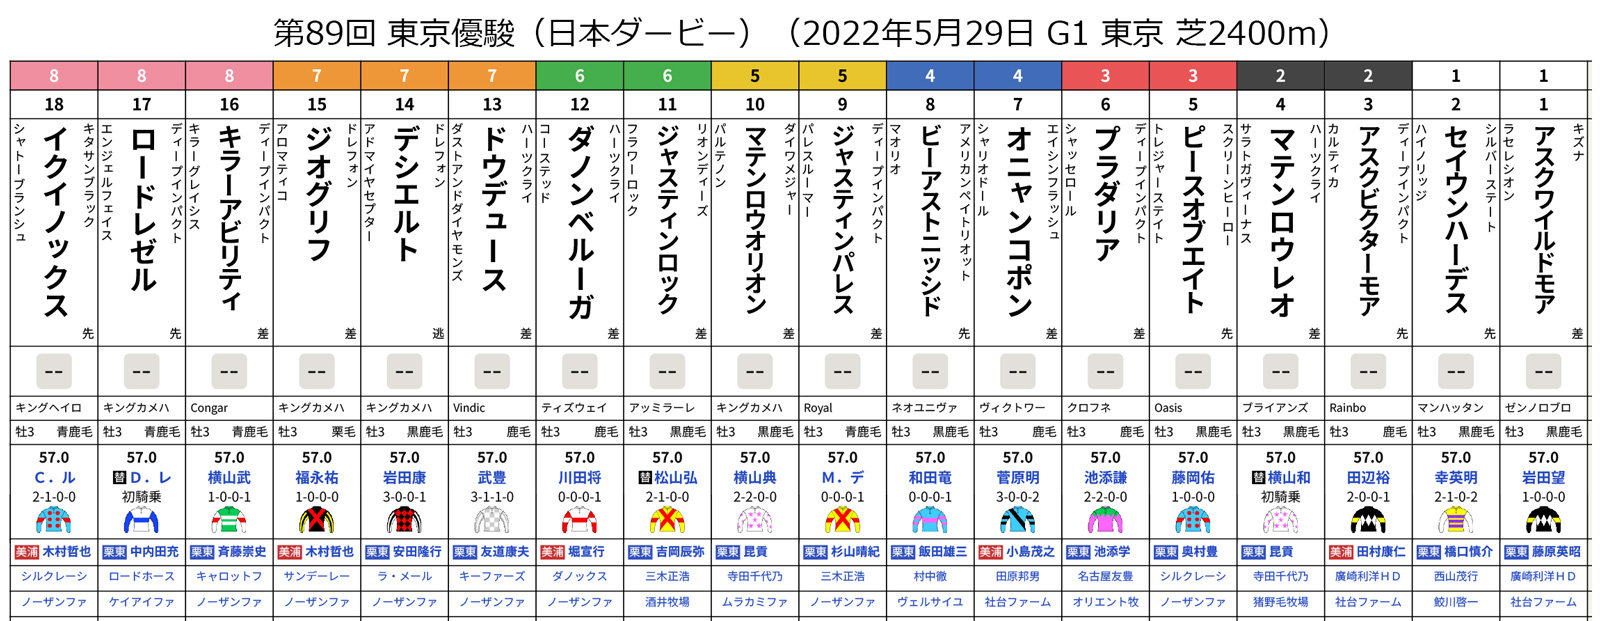 第89回 東京優駿（日本ダービー）（2022年5月29日 G1 東京 芝2400m）枠順